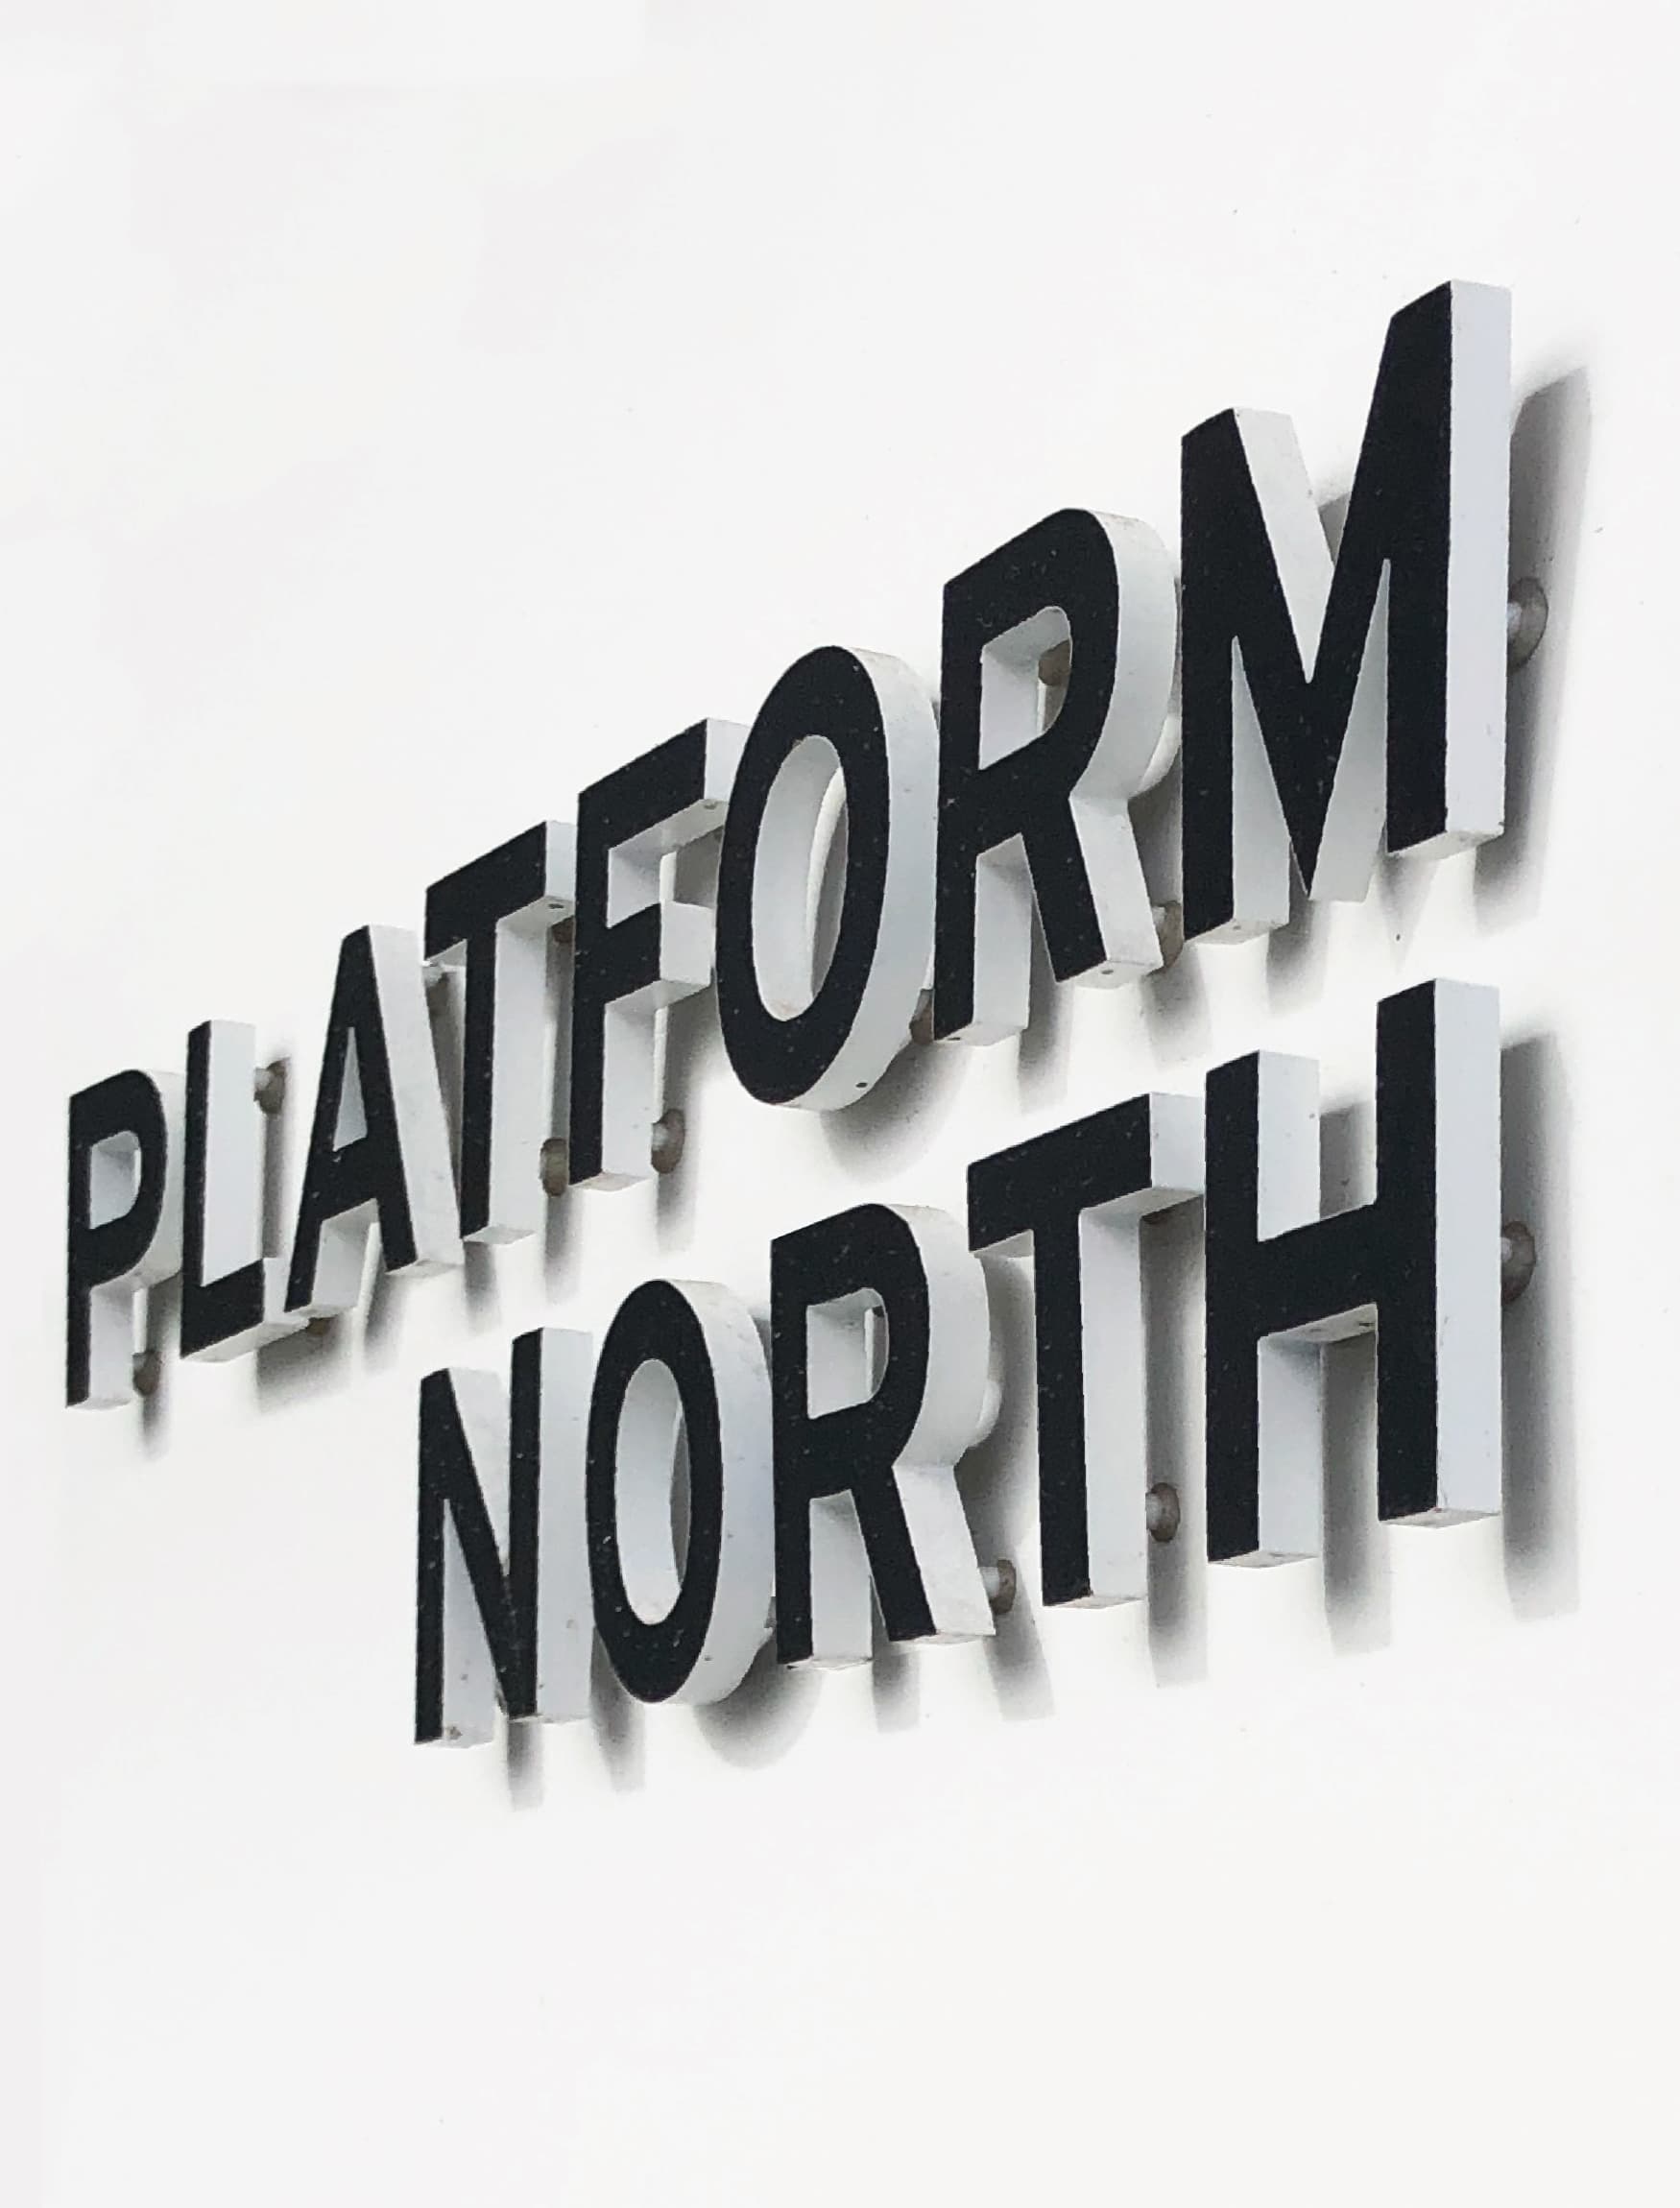 101 Platform North signage design by RSM Design for Nashville Yards in Nashville, Tennessee. 